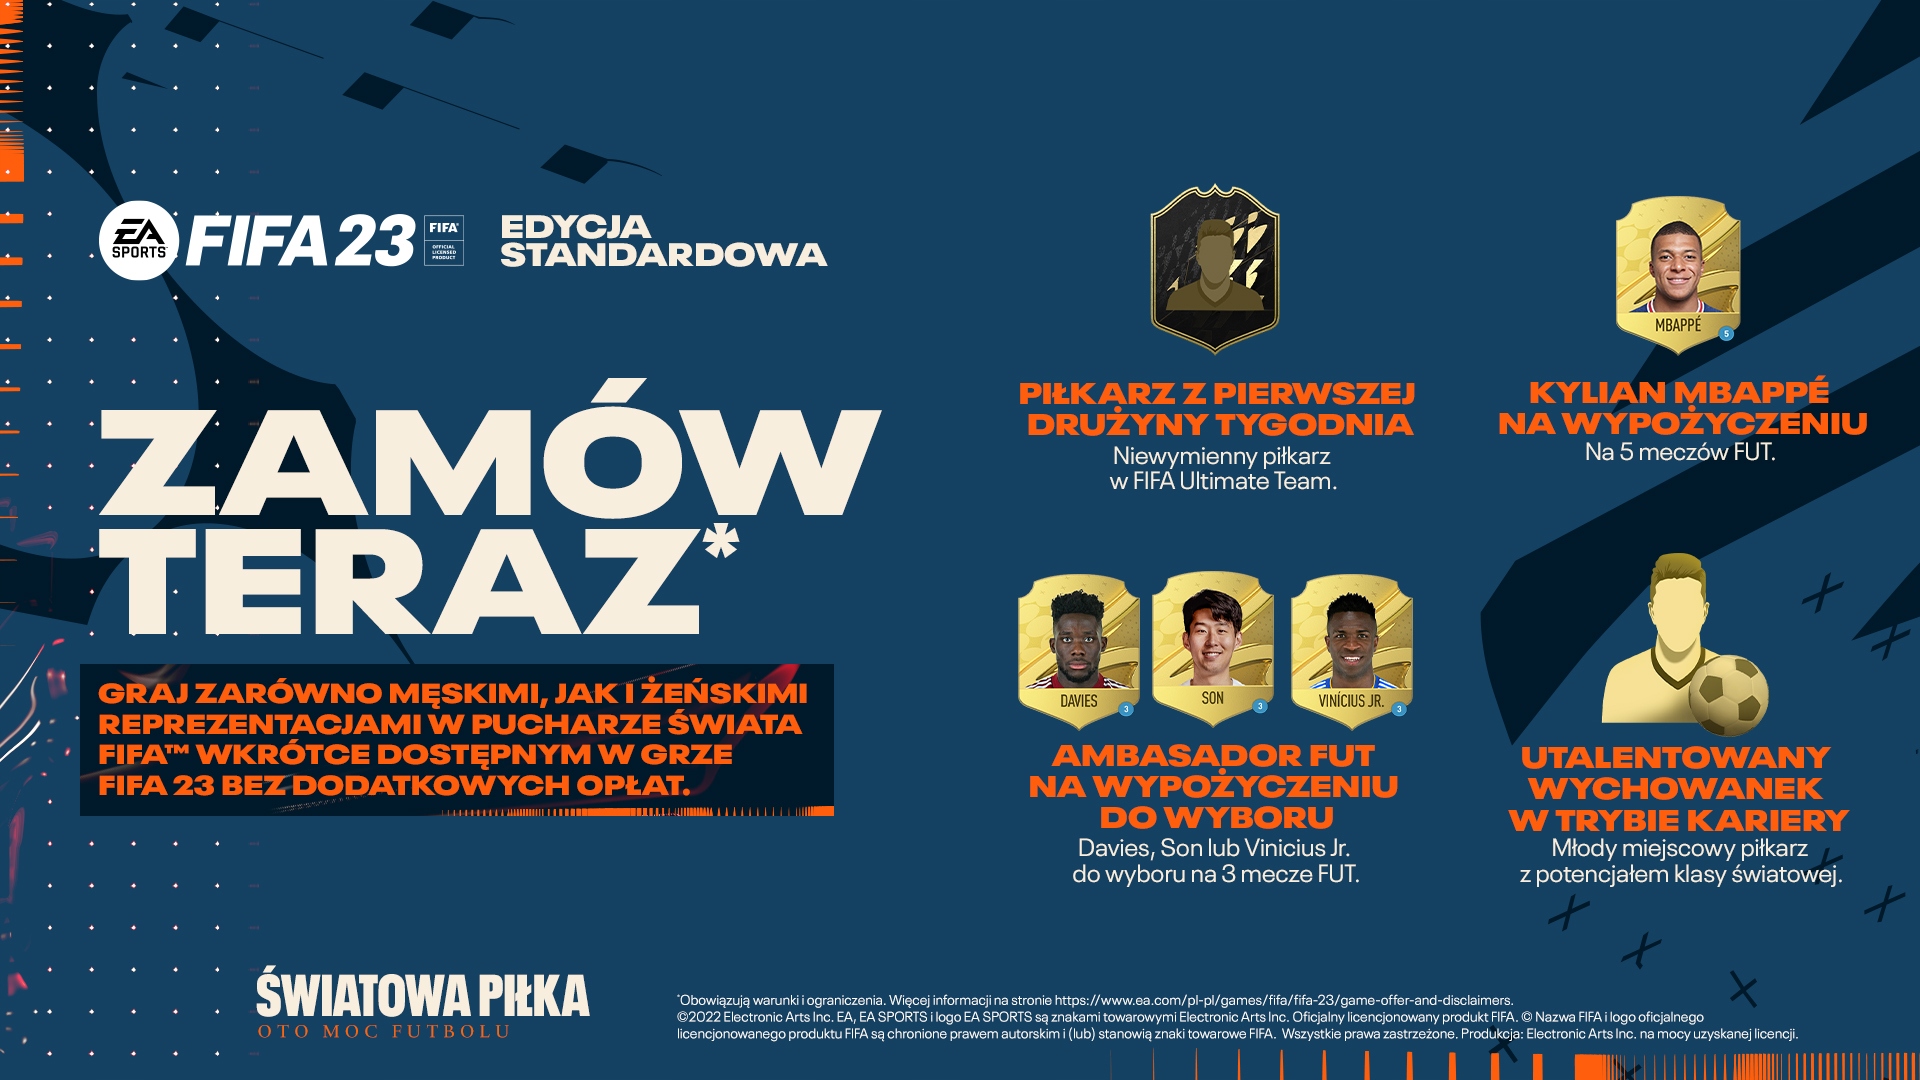 GRA PC FIFA 23 PL POLSKI KOMENTARZ DUBBING POLSKA NOWA POLISH NEW